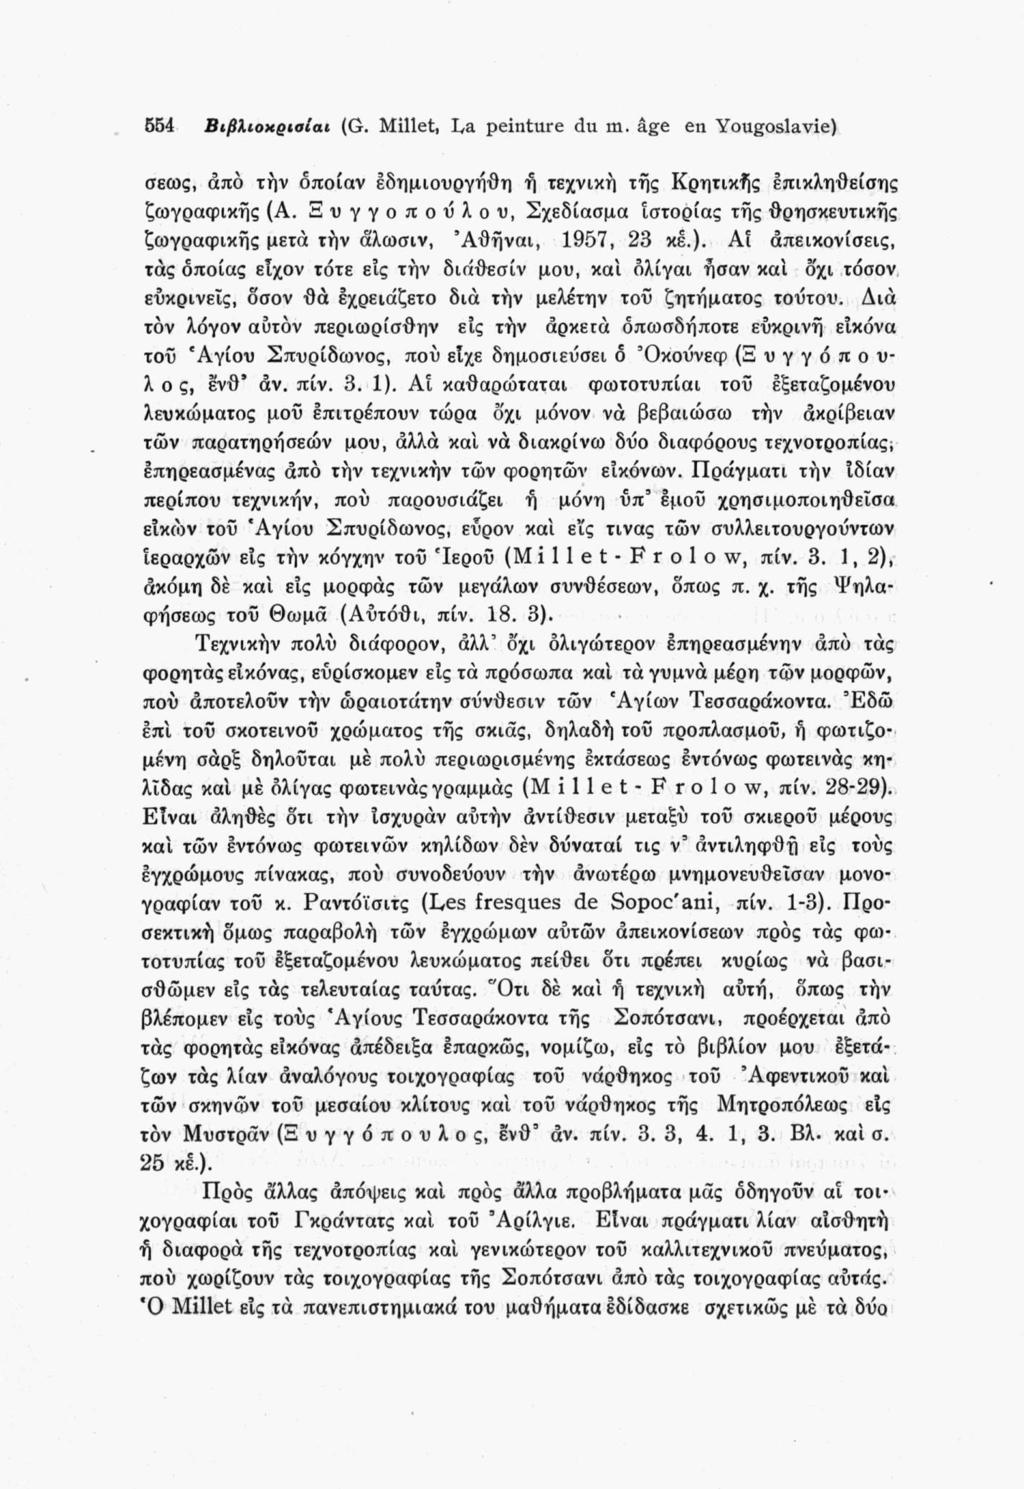 554 Βιβλίοχριαίαι (G. Millet, ha. peinture du m. âge en Yougoslavie) σεως, από την οποίαν έδημιουργήθη ή τεχνική τής Κρητικής επικληθείσης ζωγραφικής (Α.